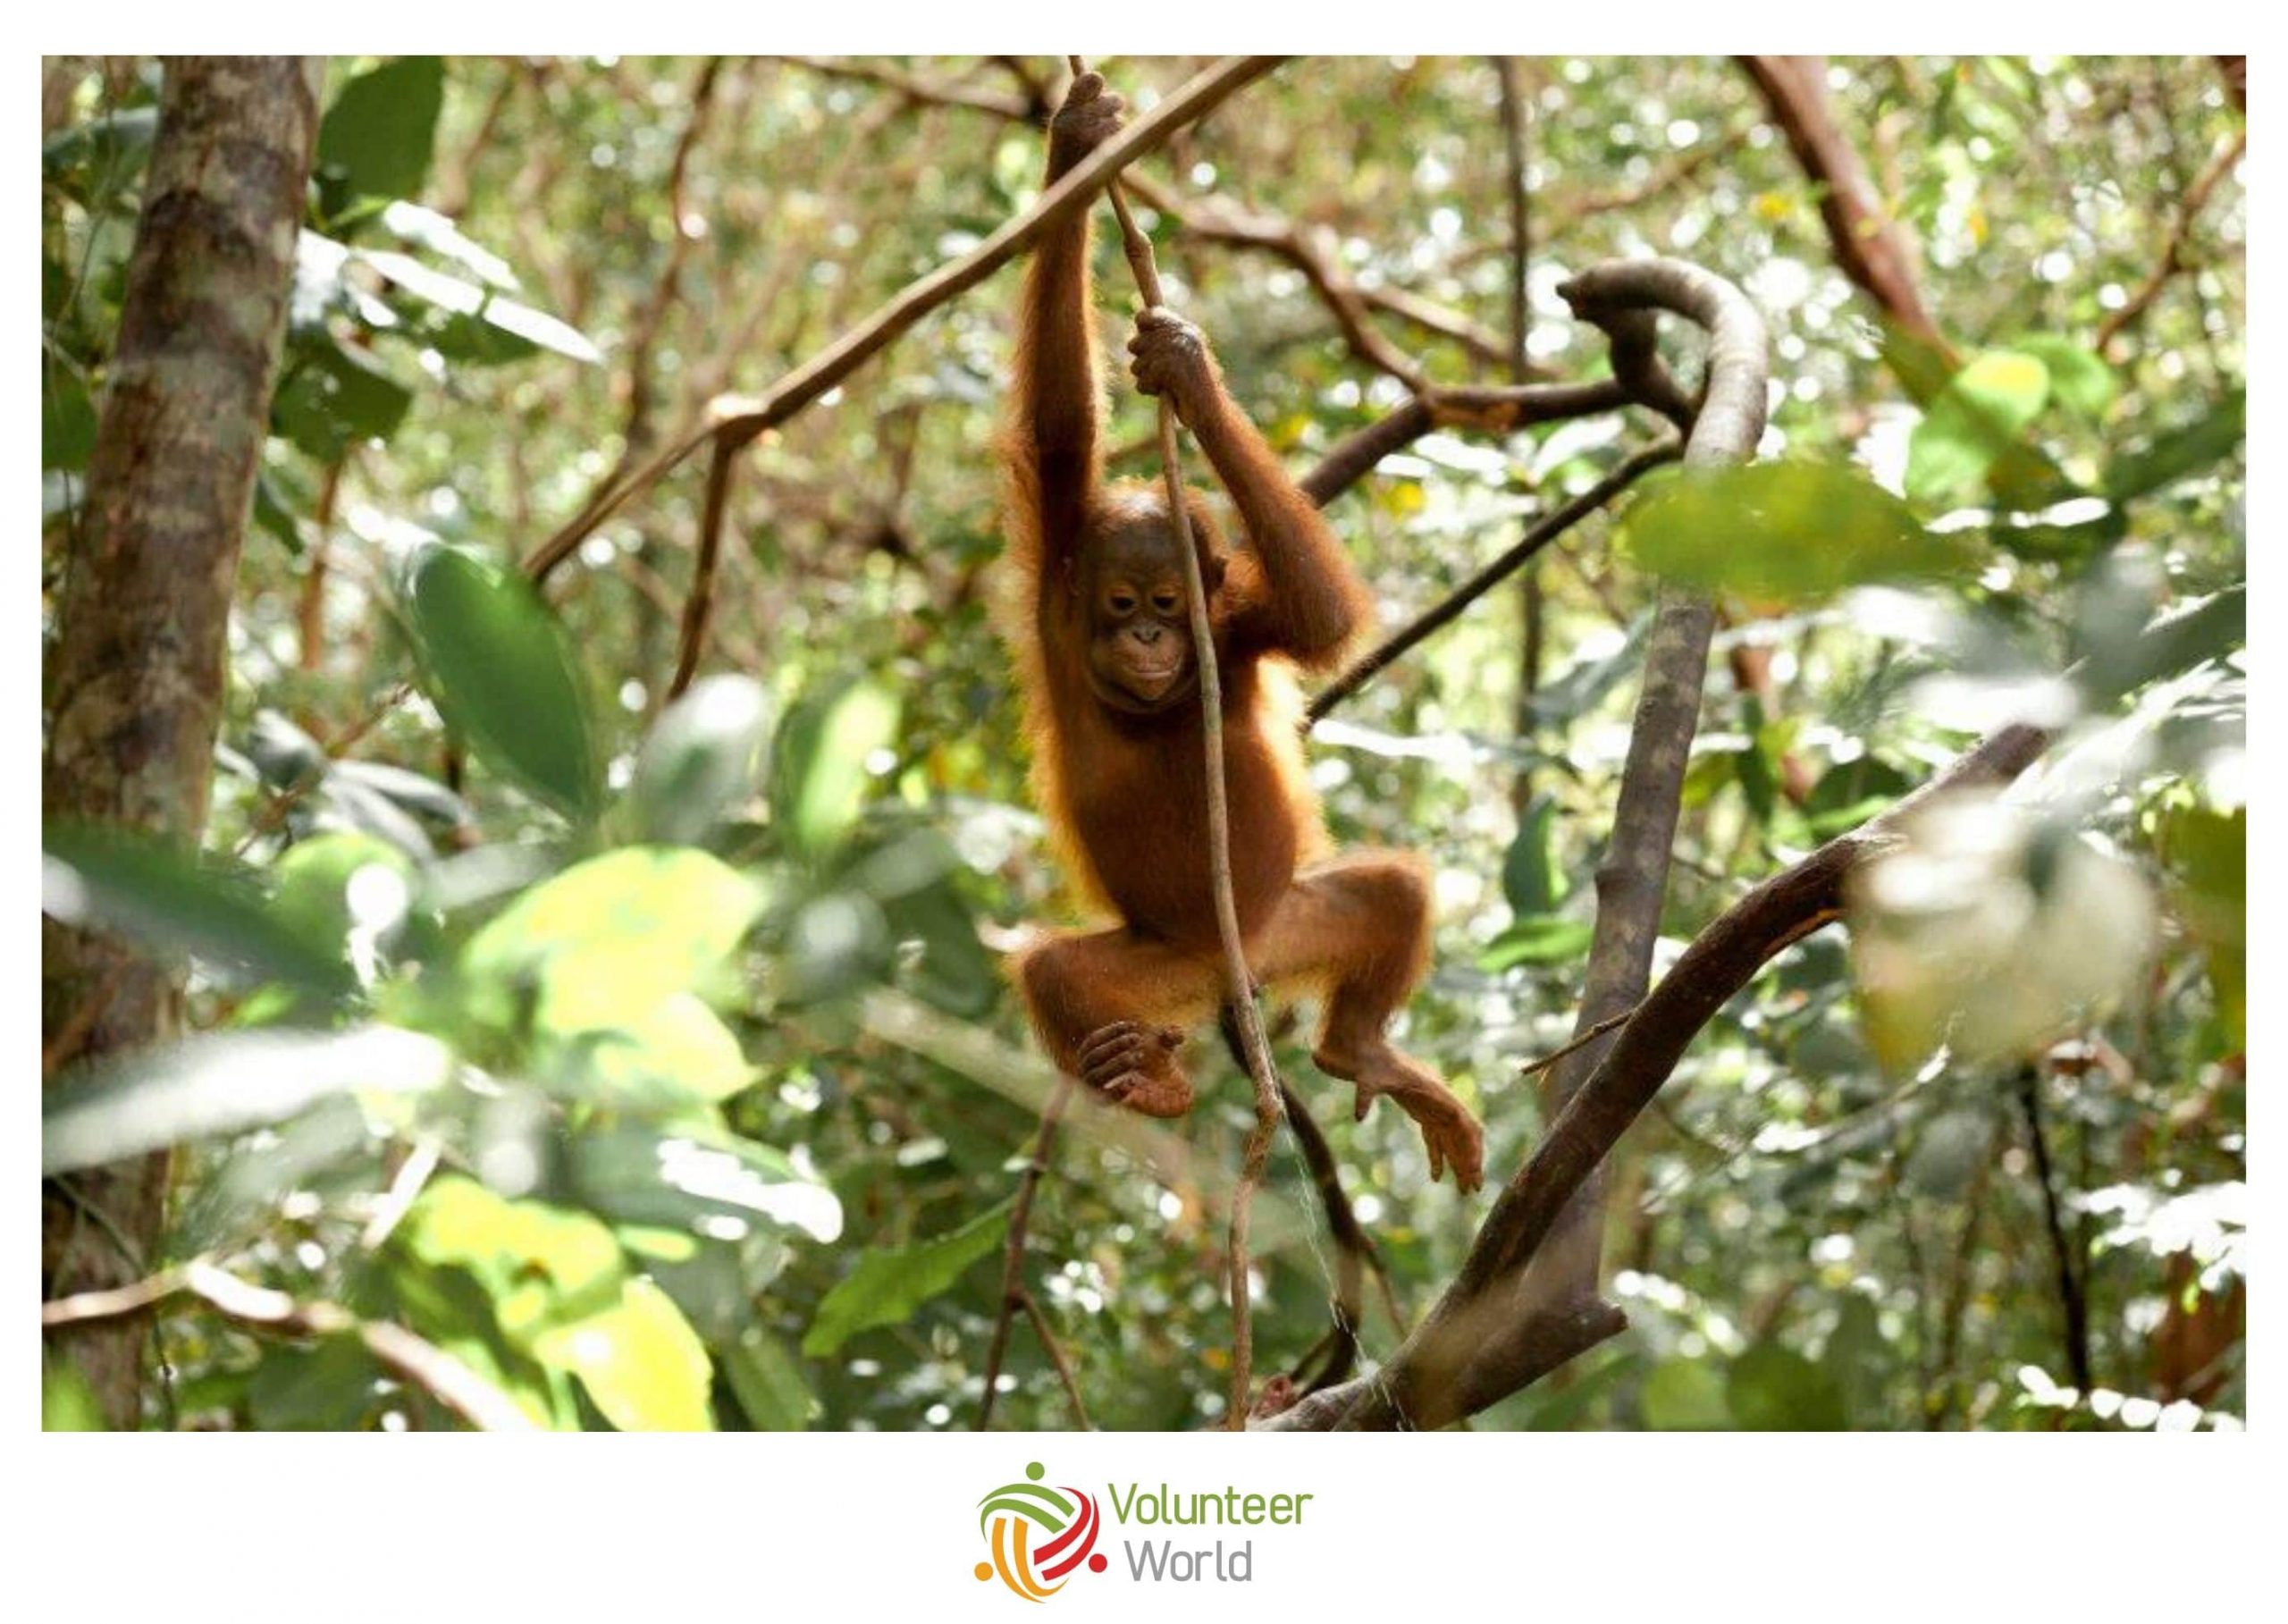 Volunteering with Orangutans in Indonesia